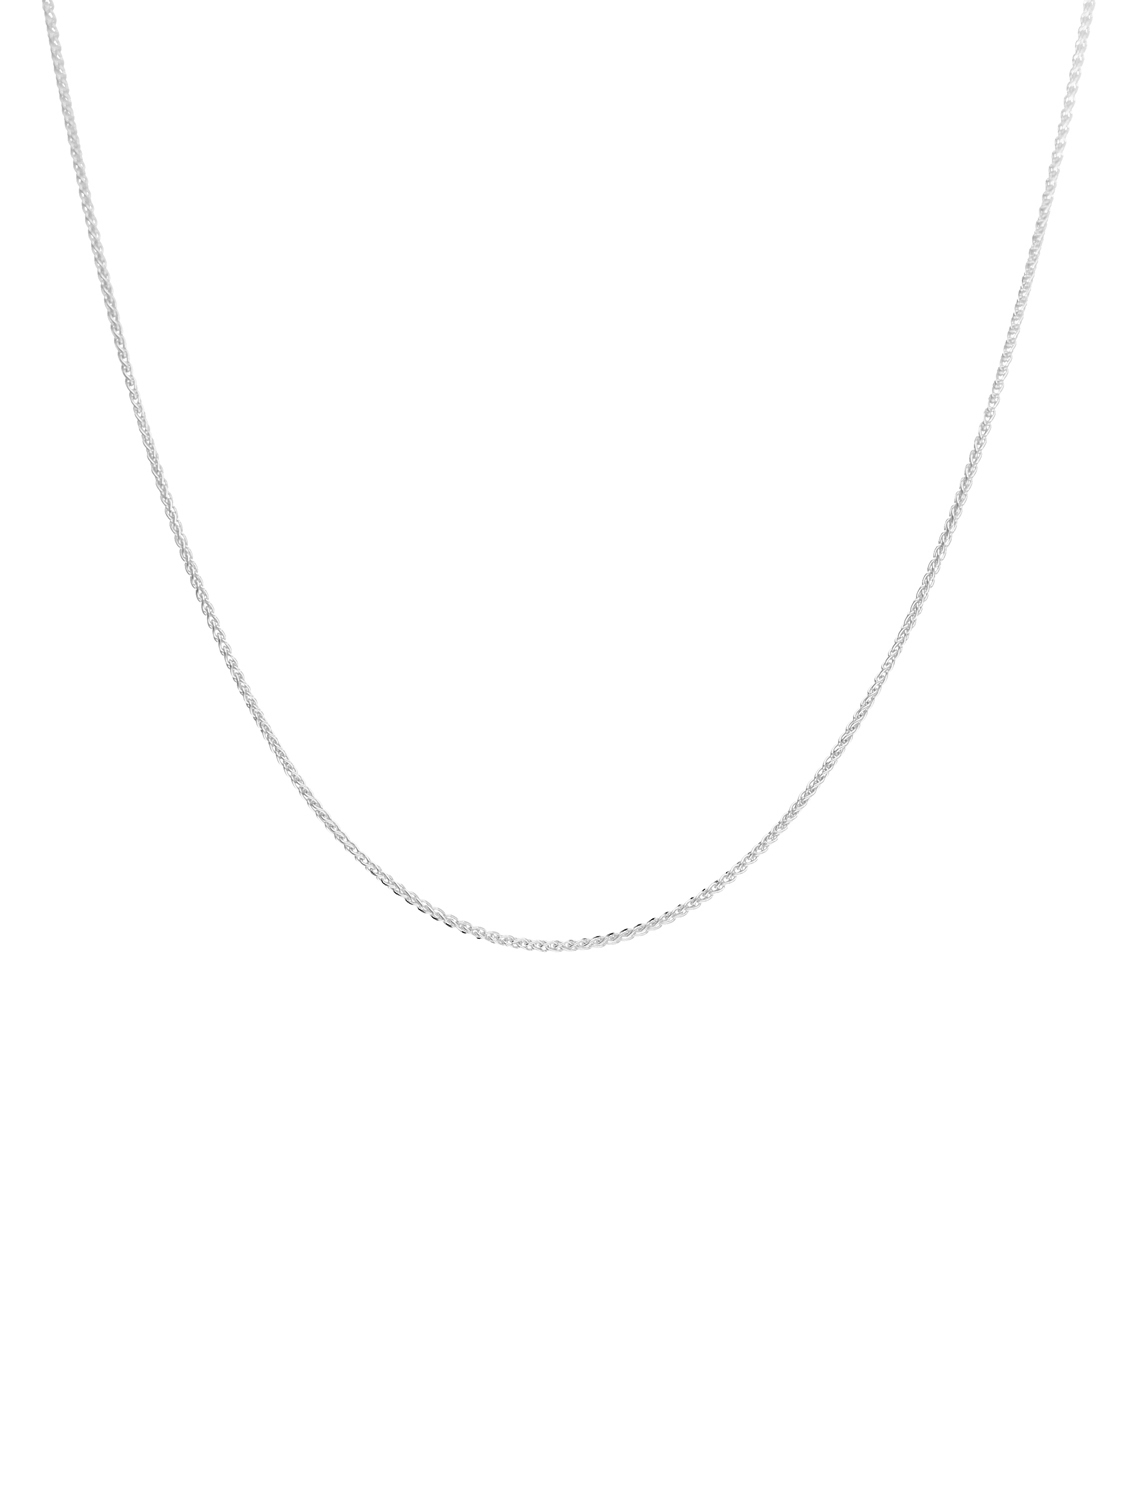 Trixi - Halskette 333 Weißgold Karabiner - Breite 1,1 mm